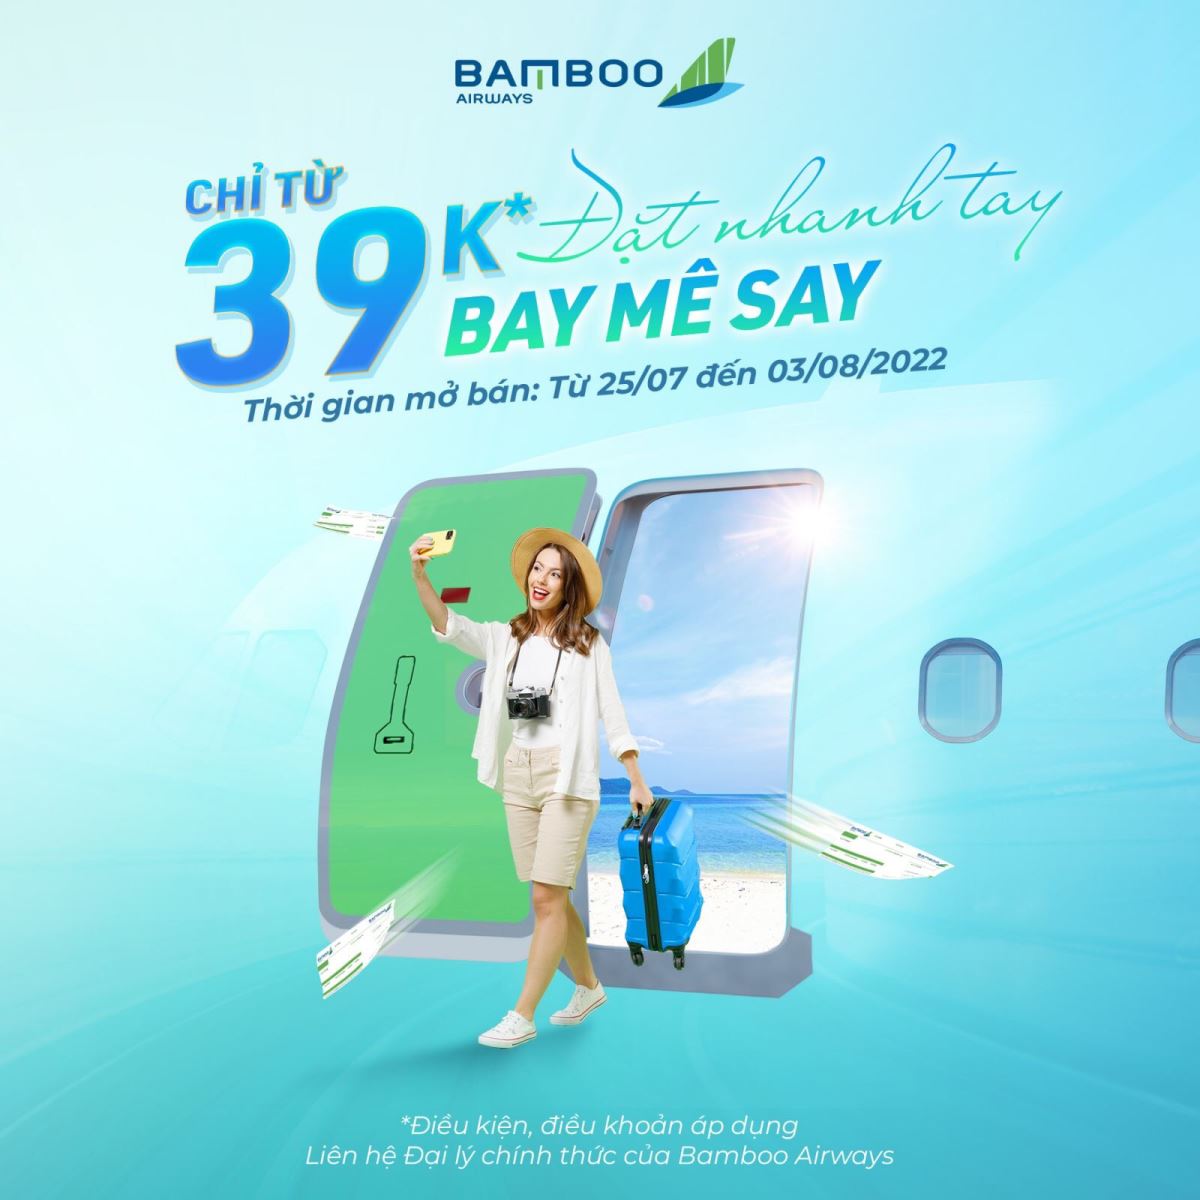 Đặt nhanh tay – Bay mê say với chỉ từ 39.000 VNĐ cùng Bamboo Airways